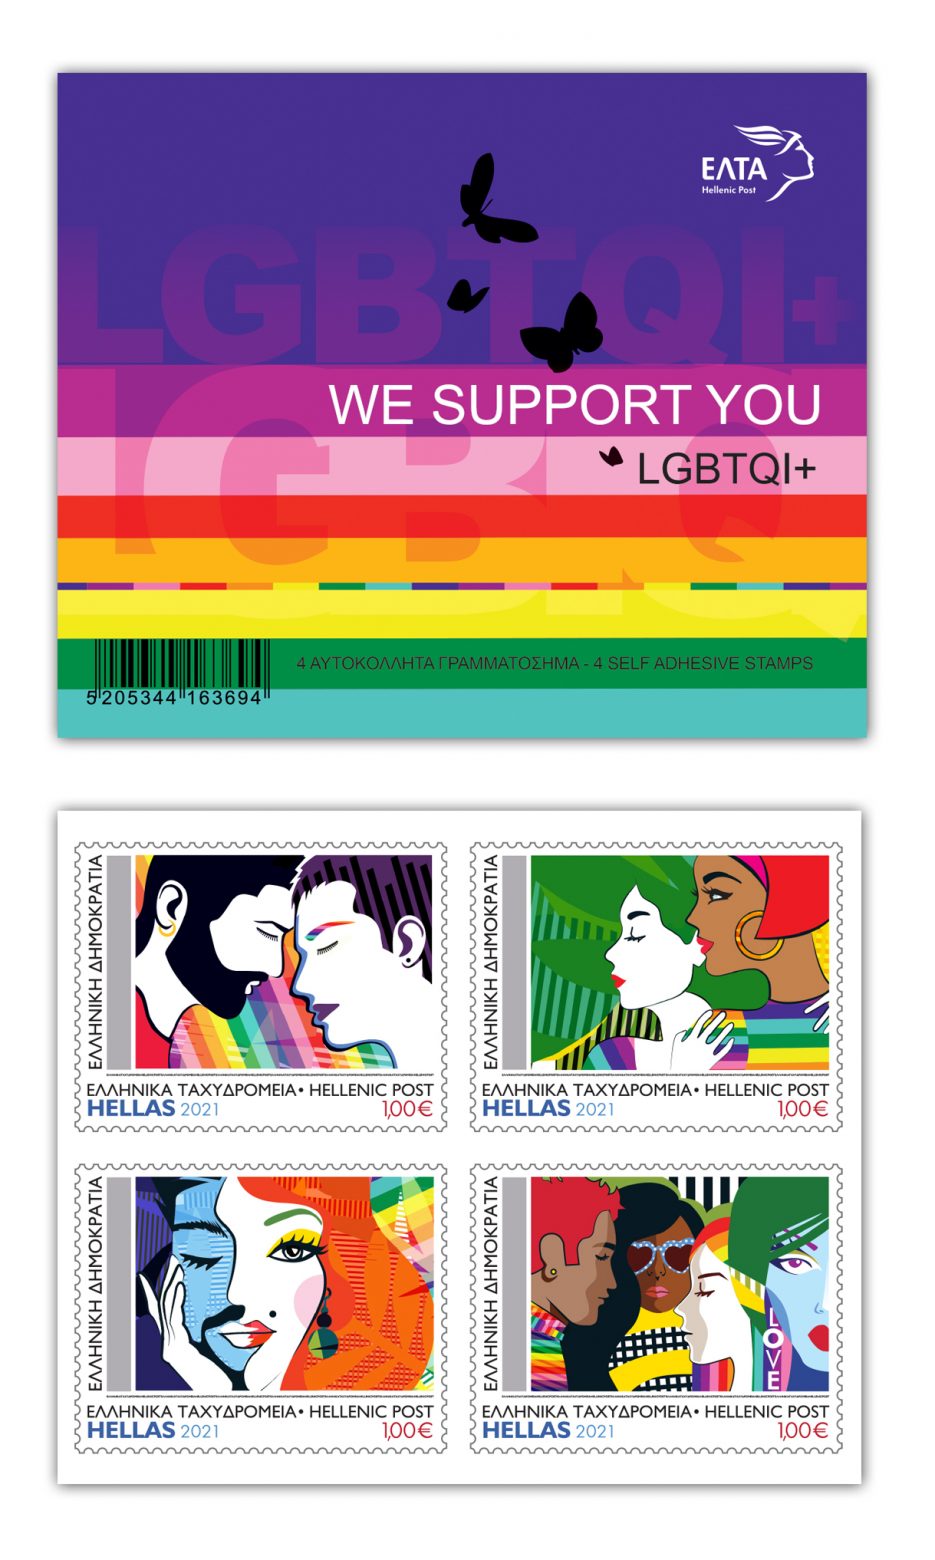 Τα πρώτα ελληνικά γραμματόσημα κατά της ομοφοβίας - ΤΑ ΝΕΑ